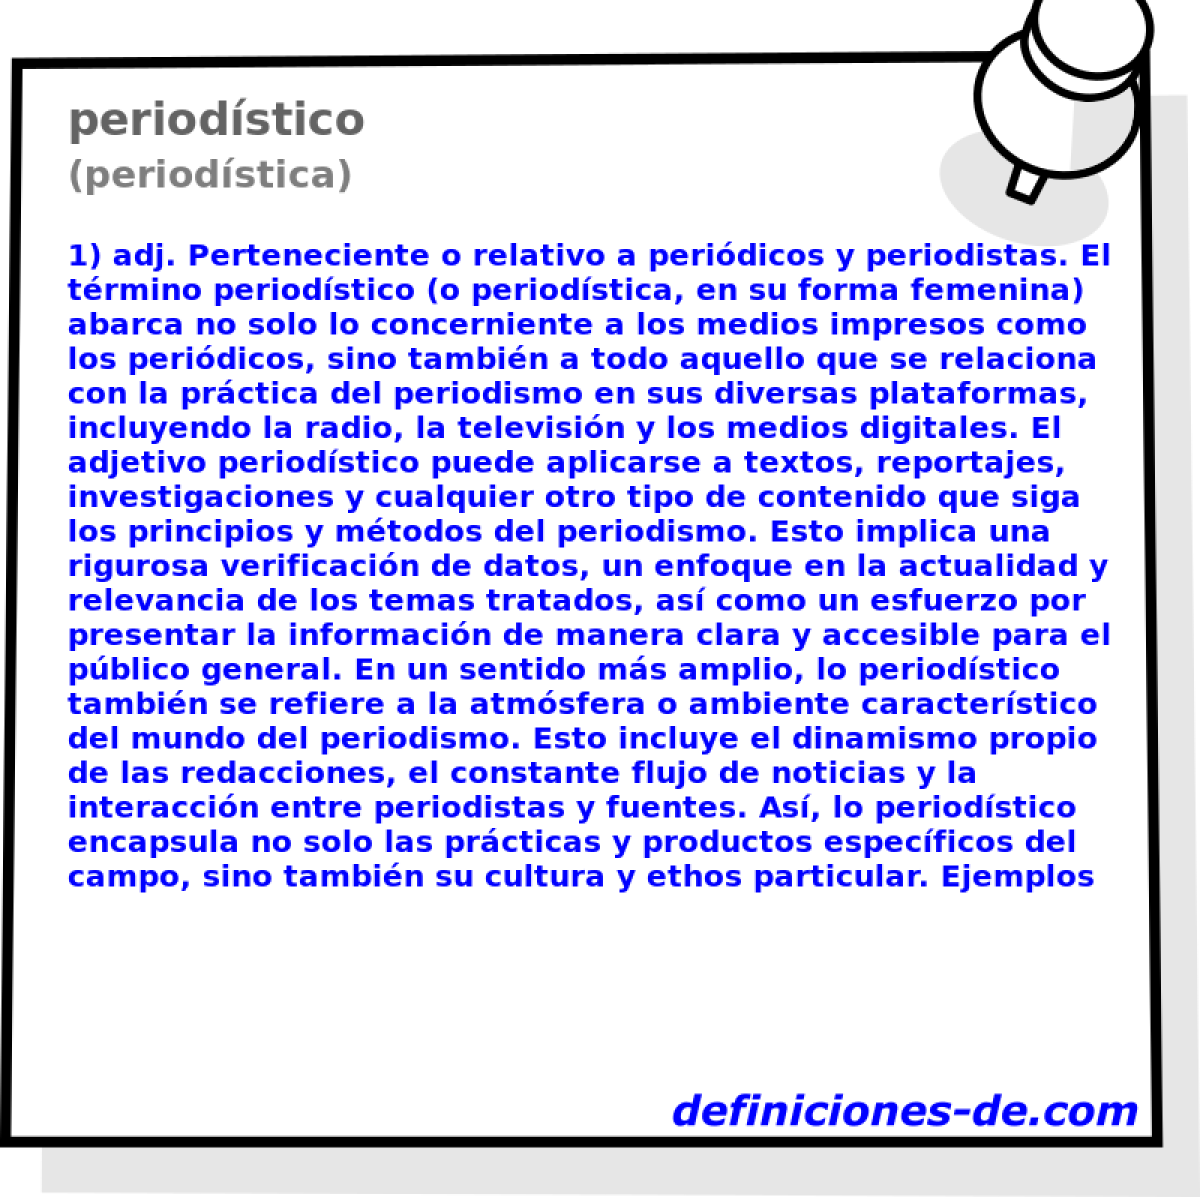 periodstico (periodstica)